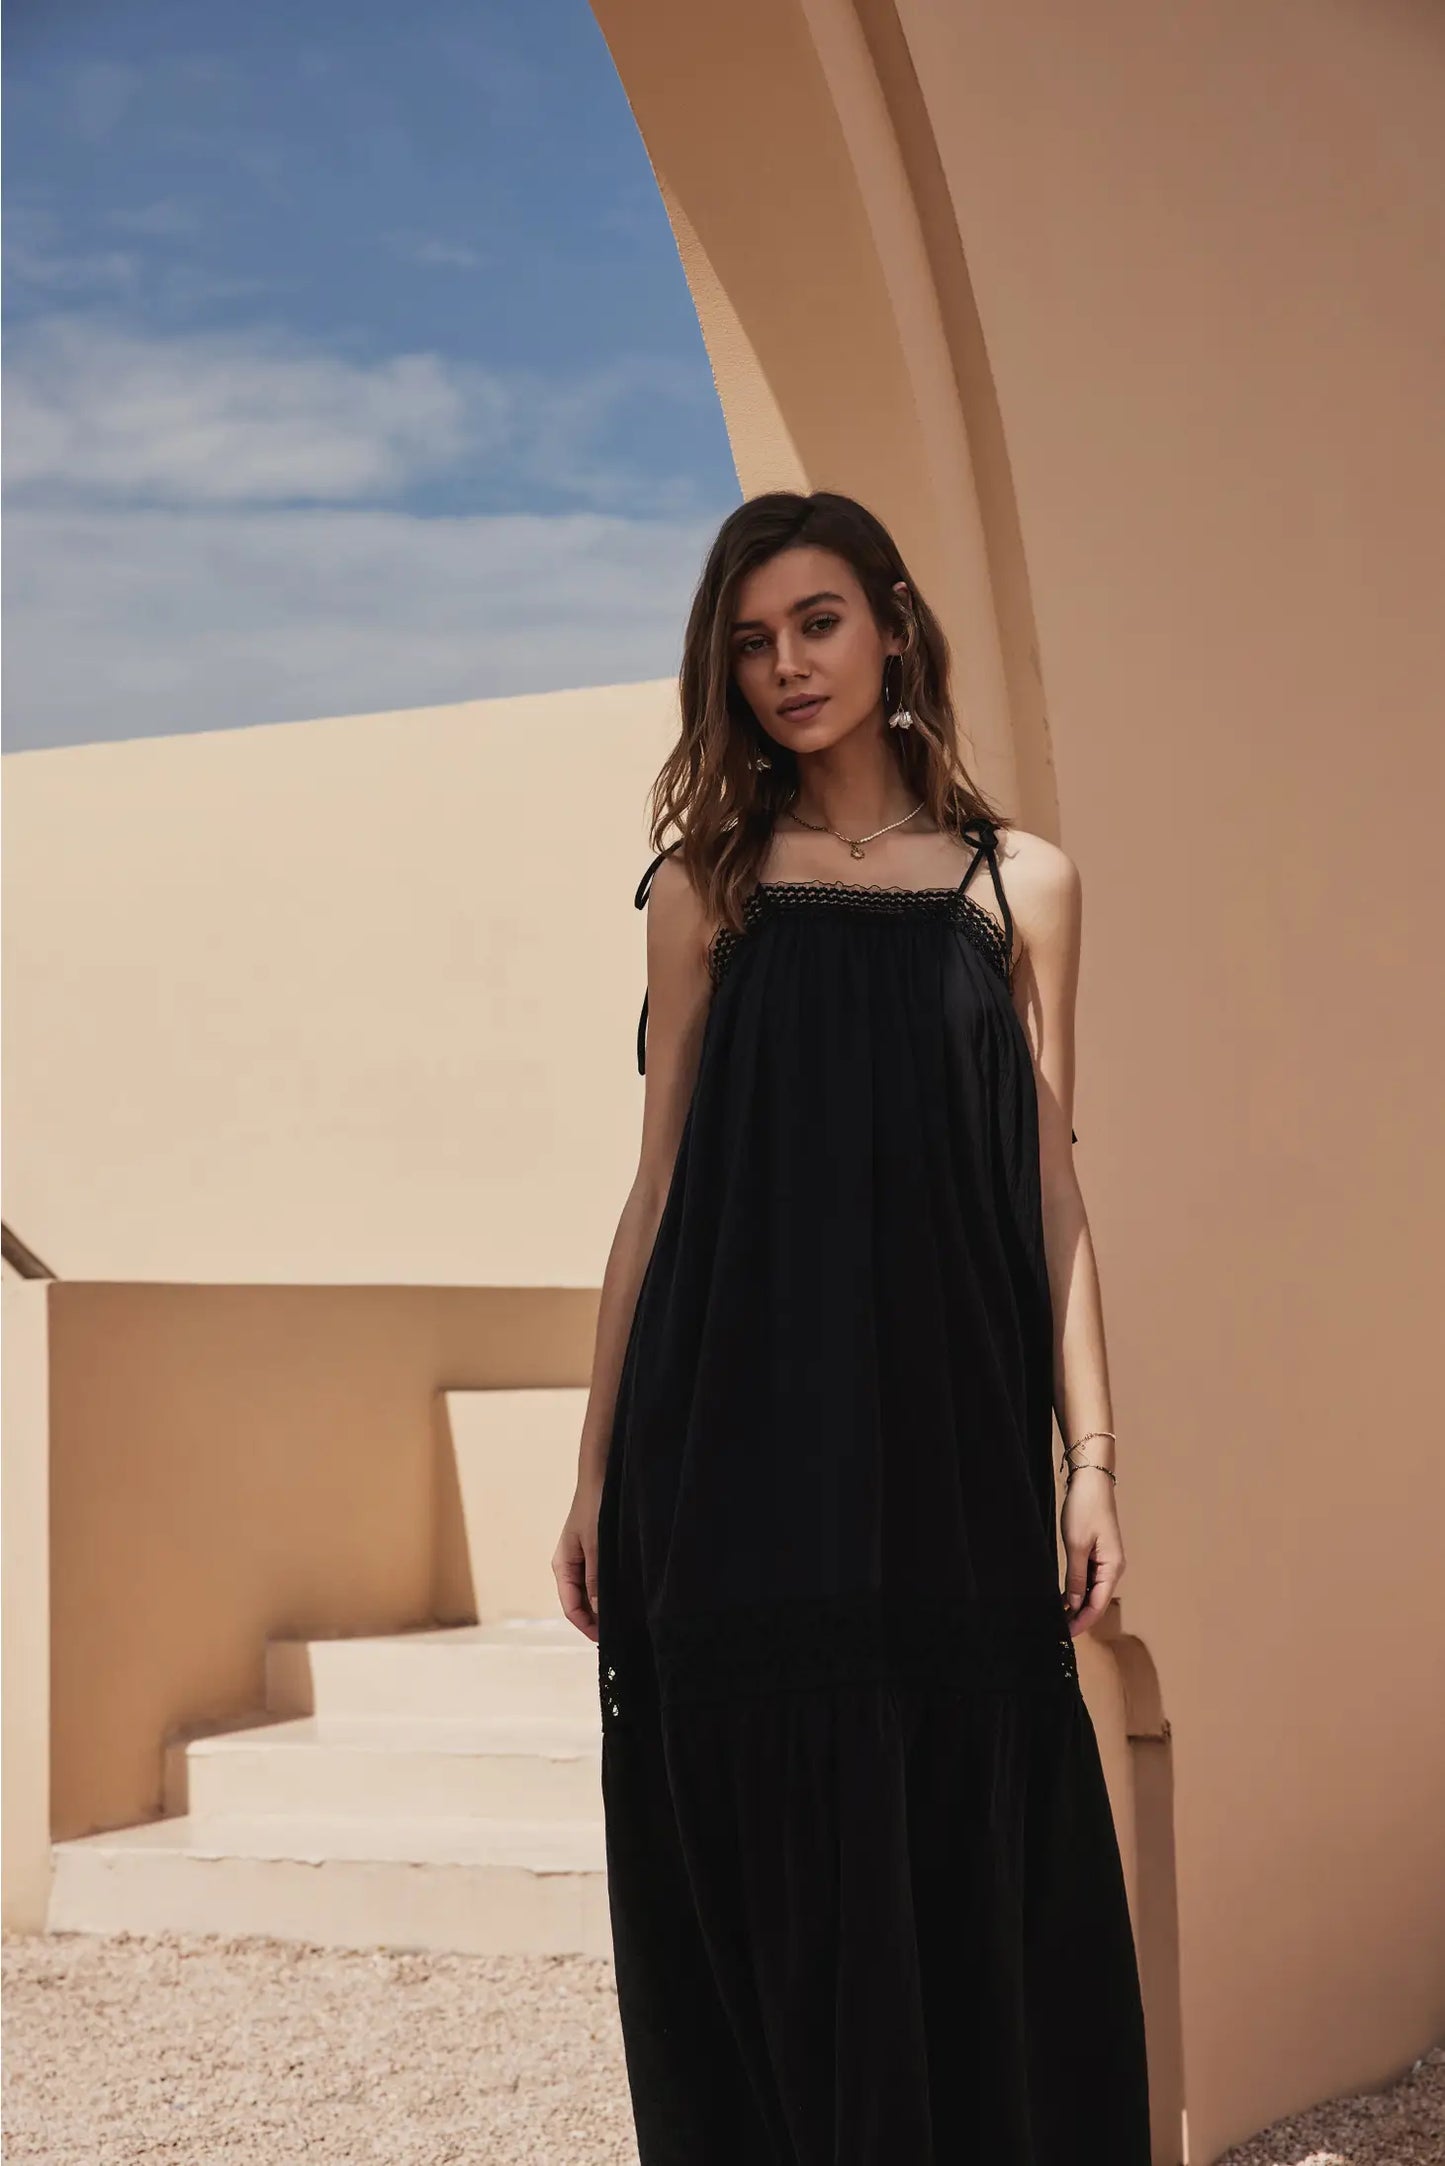 Apparel- Frieeah Elvira Cotton Nightgown Maxi Dress